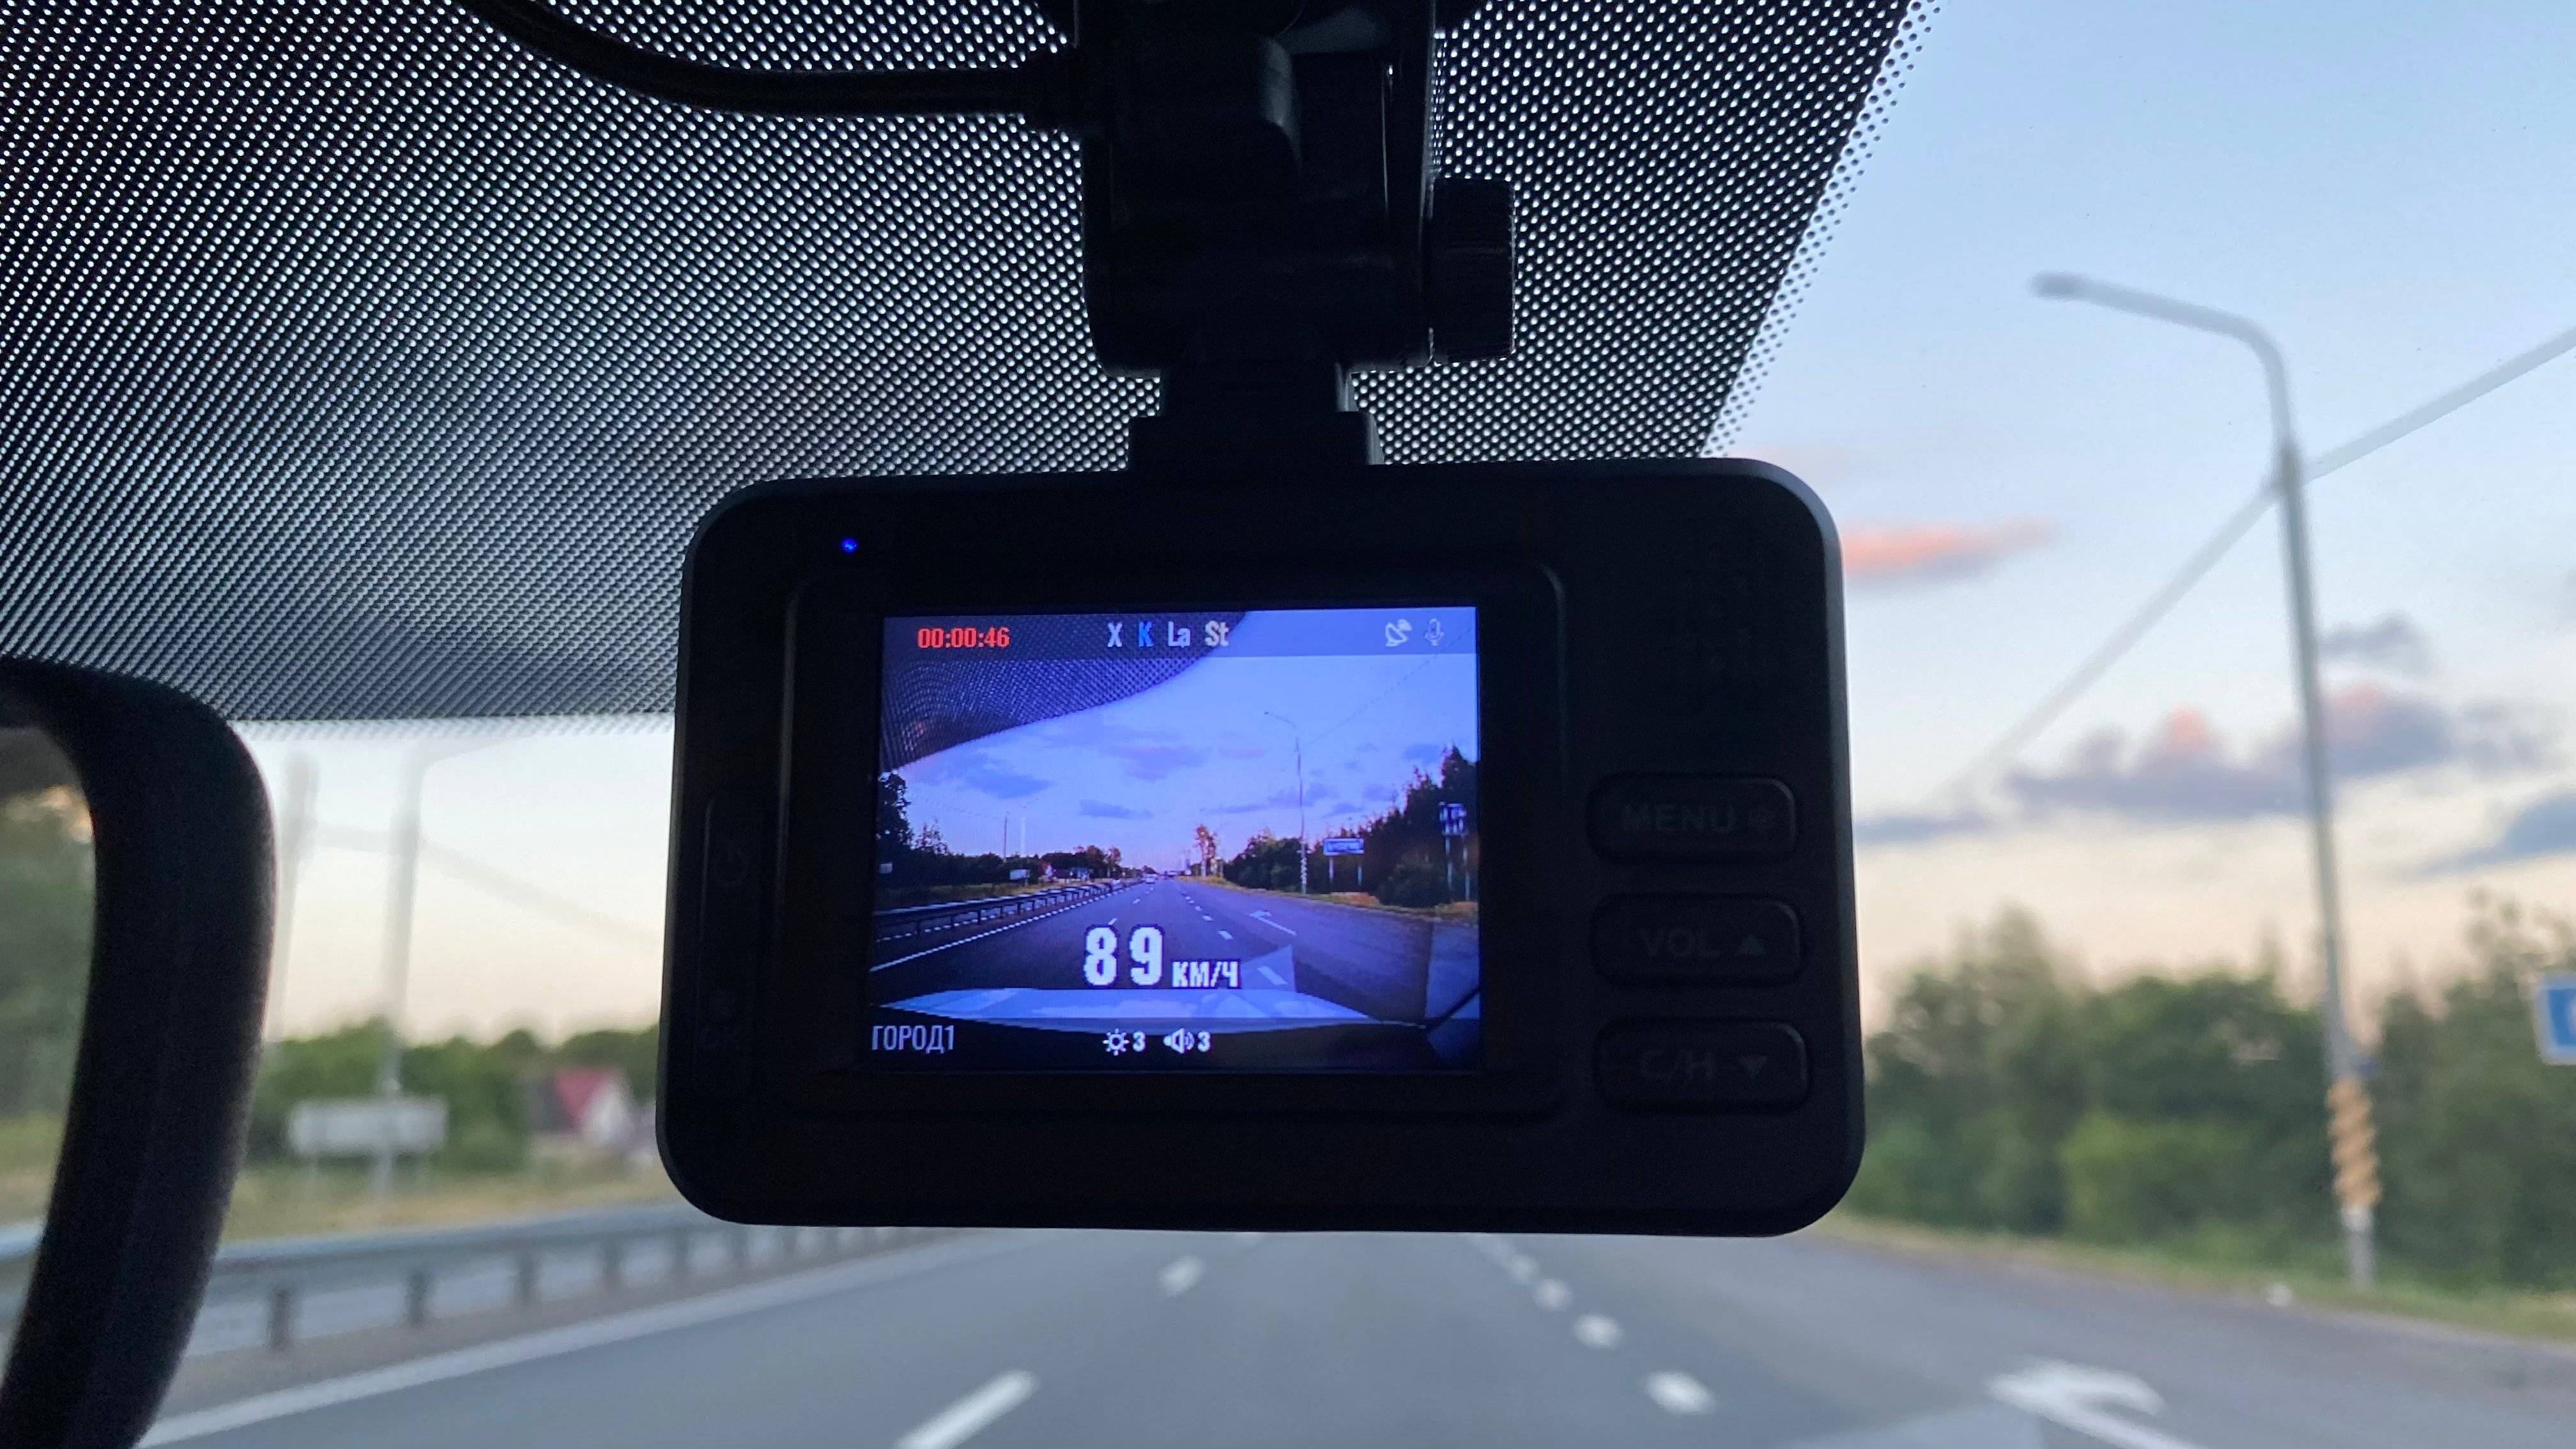 Комбо-видеорегистратор roadgid x7 2019 года – обзор и тестирование